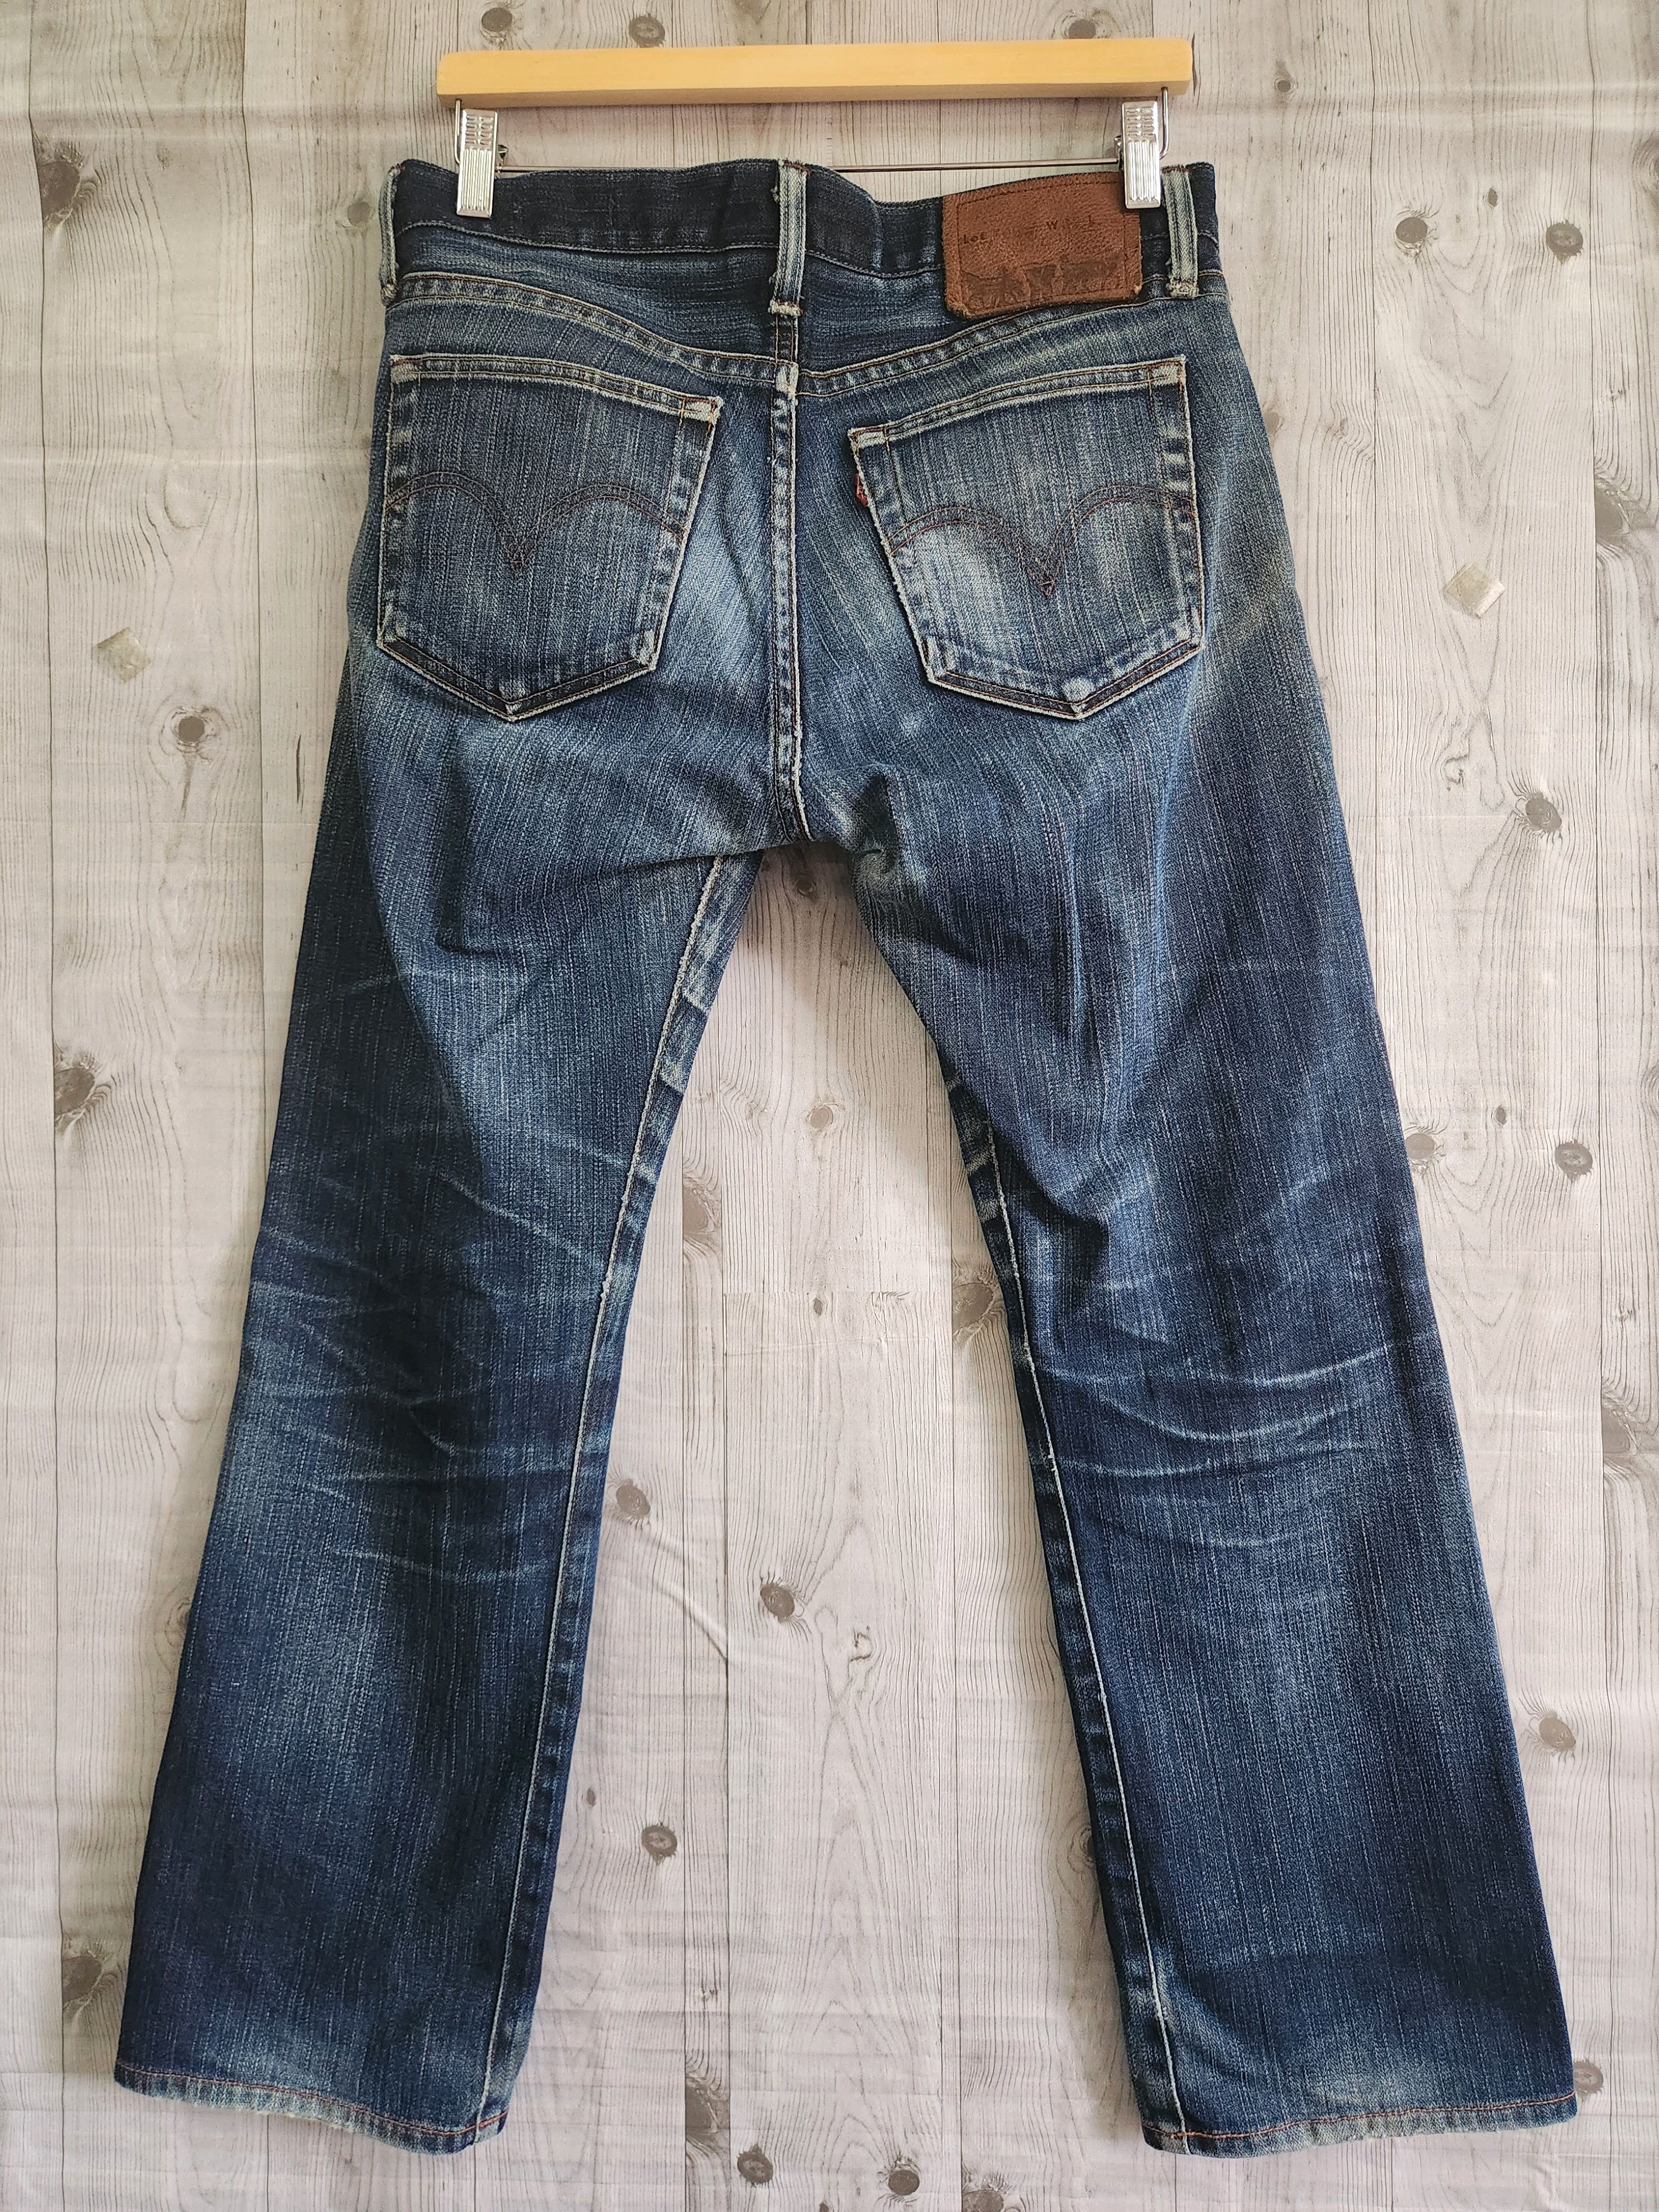 Levis 505 Premium Distressed Denim Jeans - 12